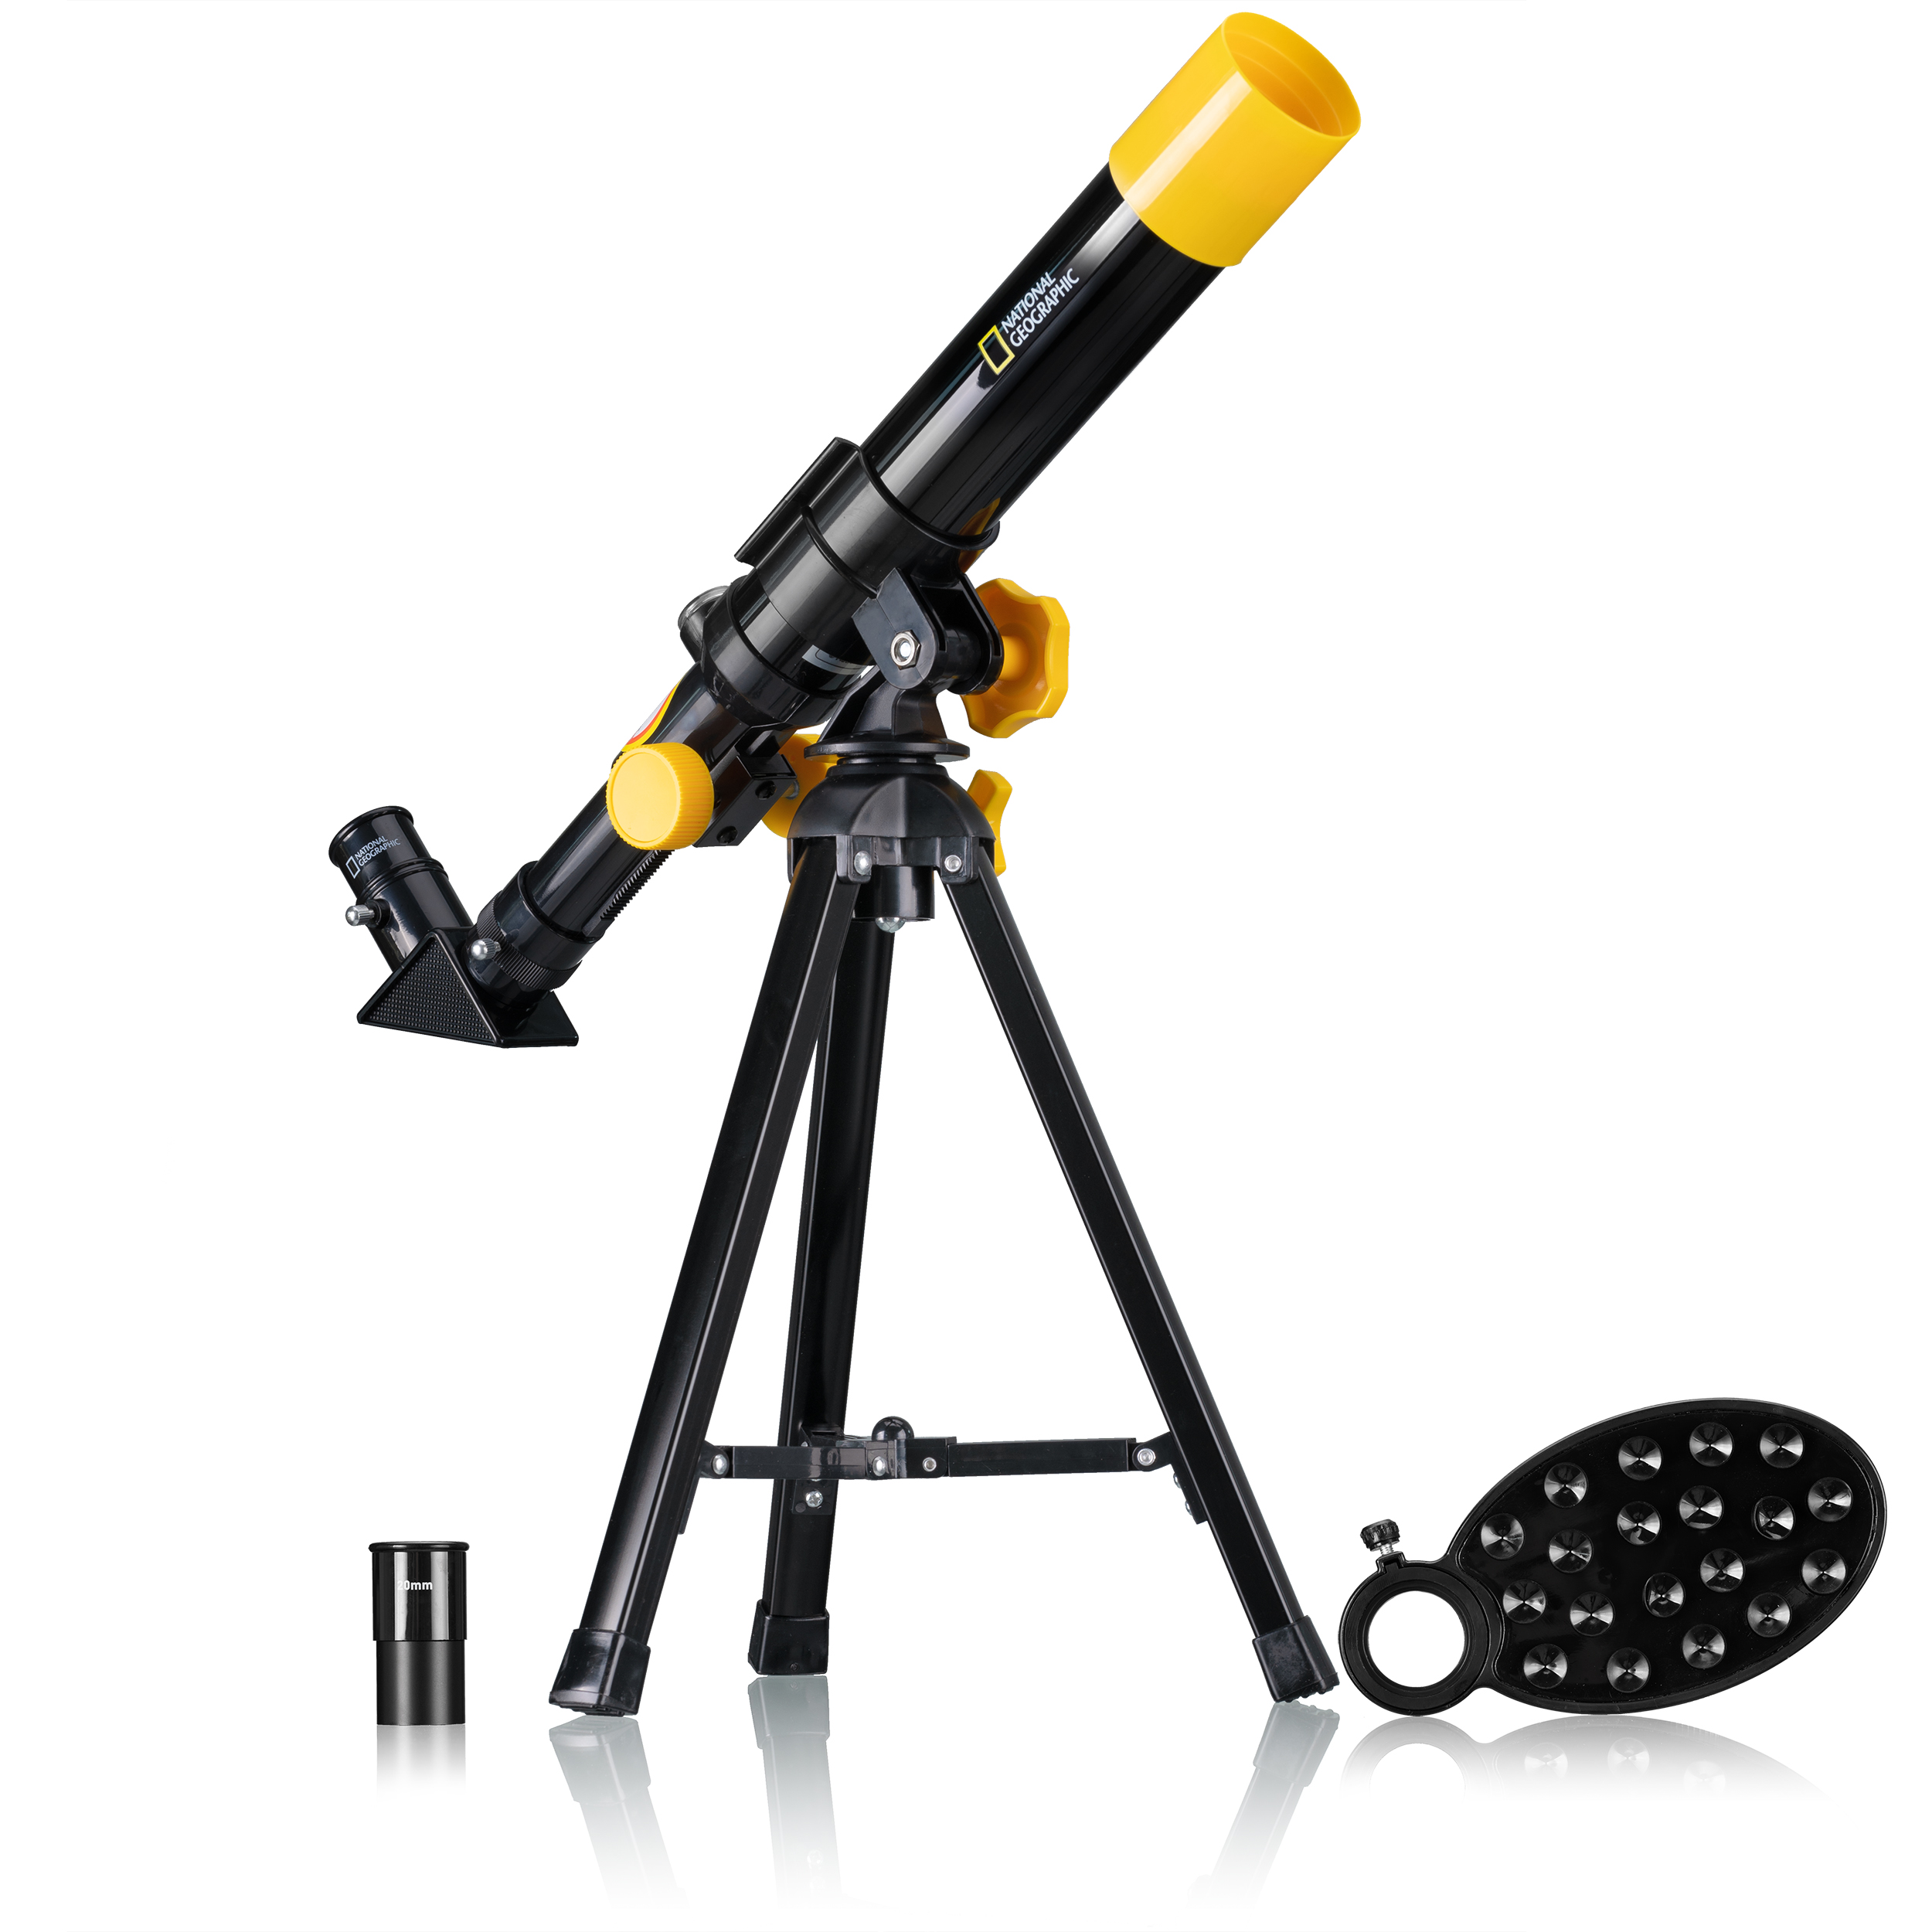 Компактный детский телескоп NATIONAL GEOGRAPHIC Bresser 40/400, 9140400 микроскоп bresser national geographic 40x 1280x с держателем для смартфона